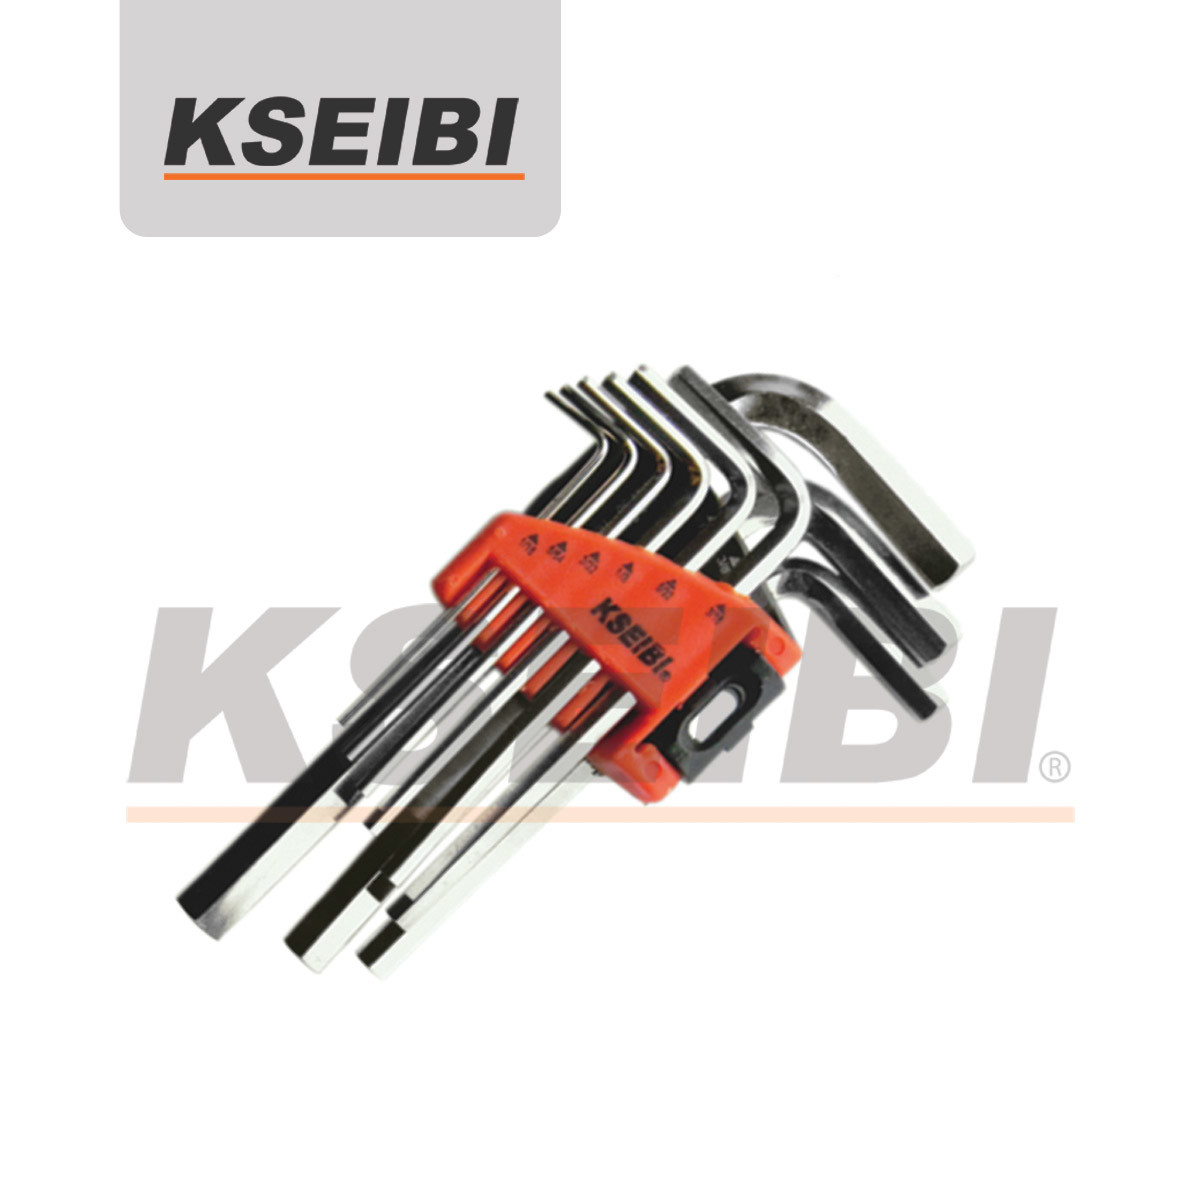 9-PC Hex Key Wrench Set - Kseibi